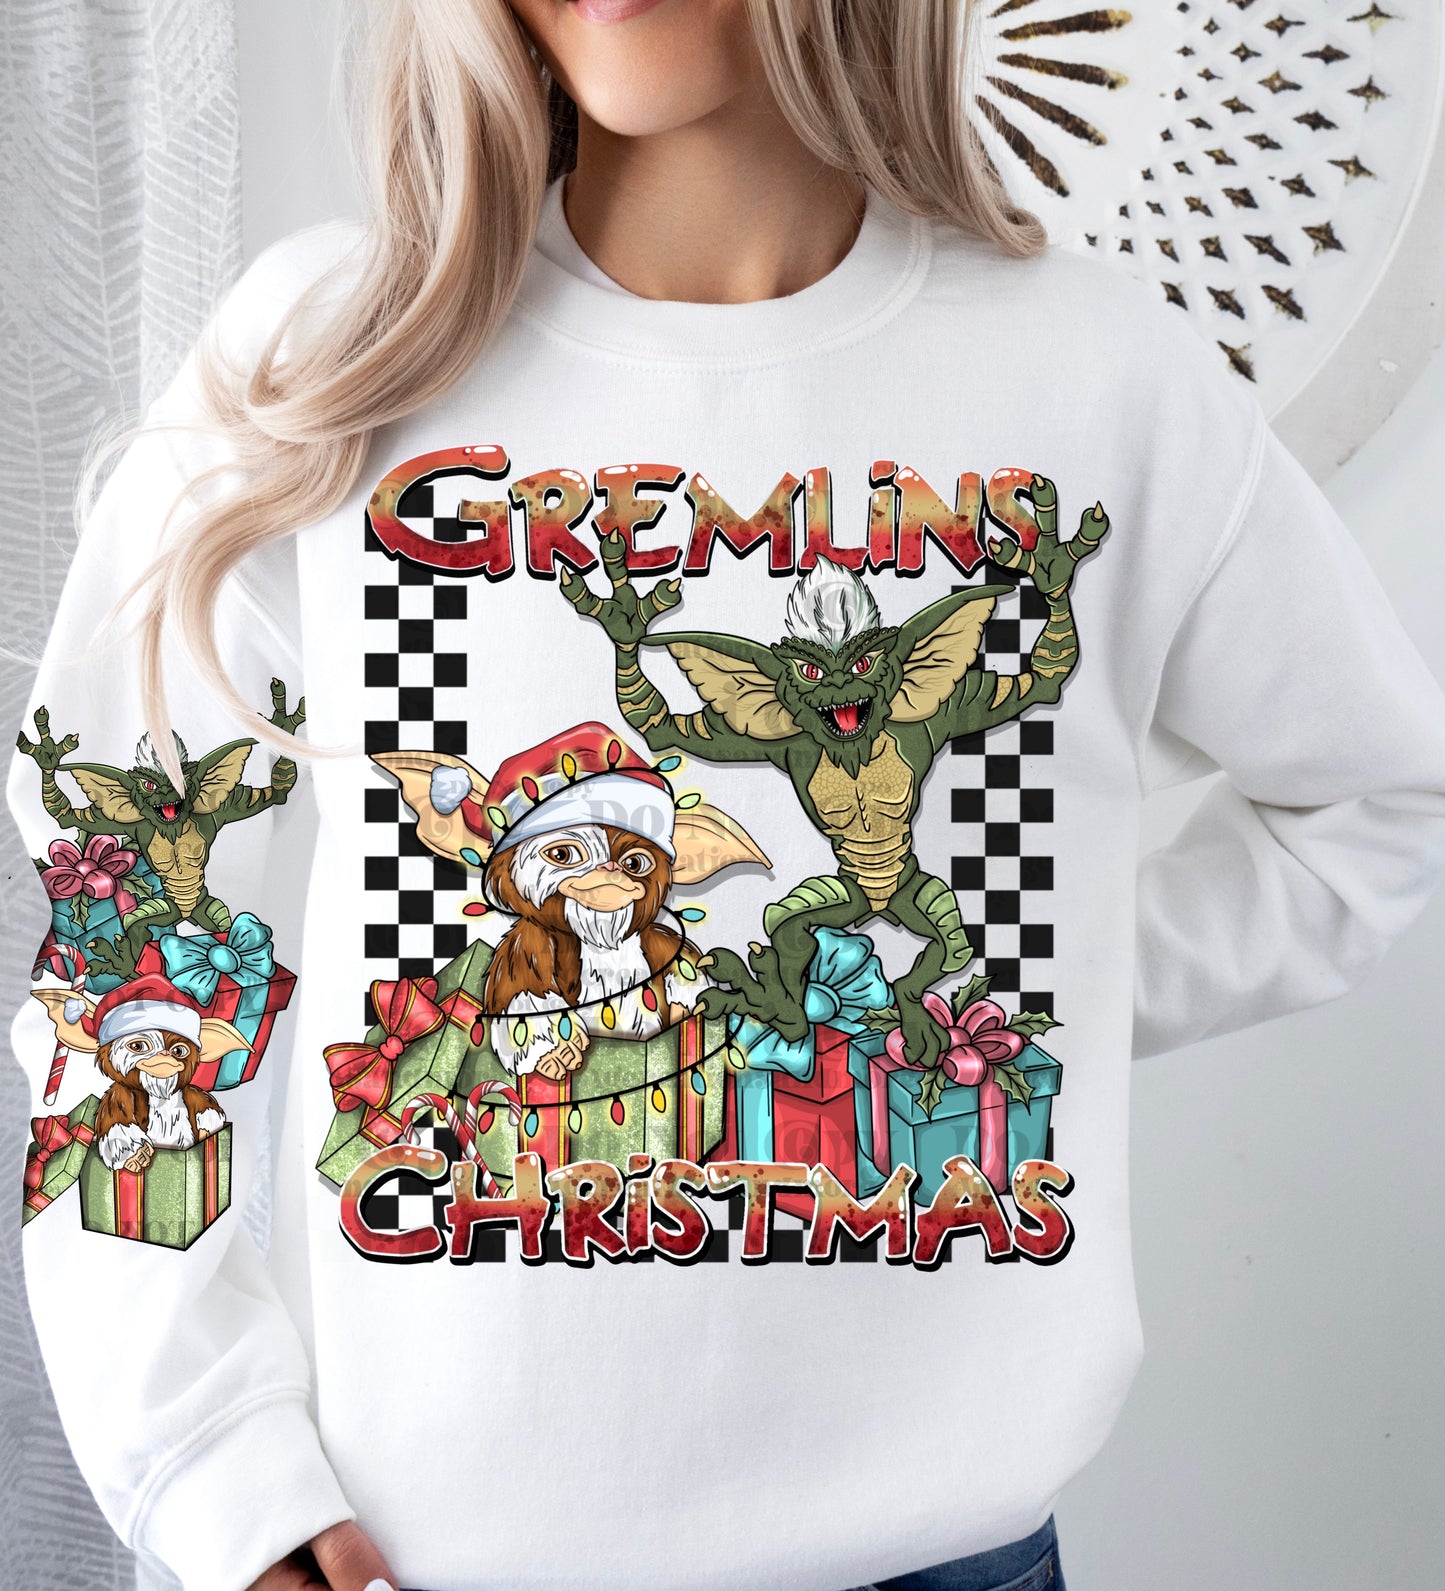 Gremlins Christmas: *DTF* Transfer